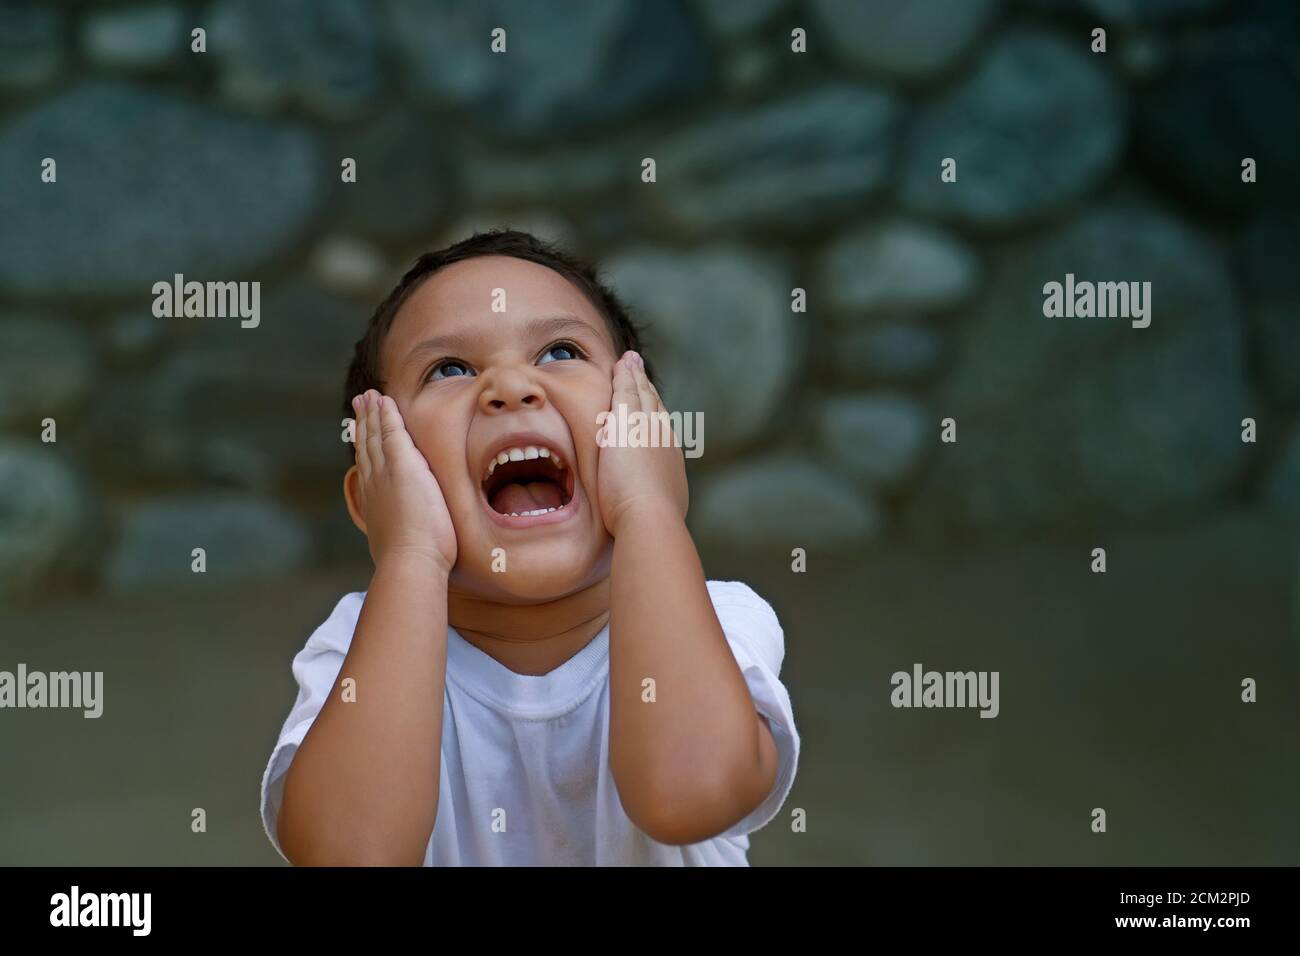 El preschooler latino abrumado con felicidad sostiene su cara con ambas manos y grita muy fuerte. Foto de stock